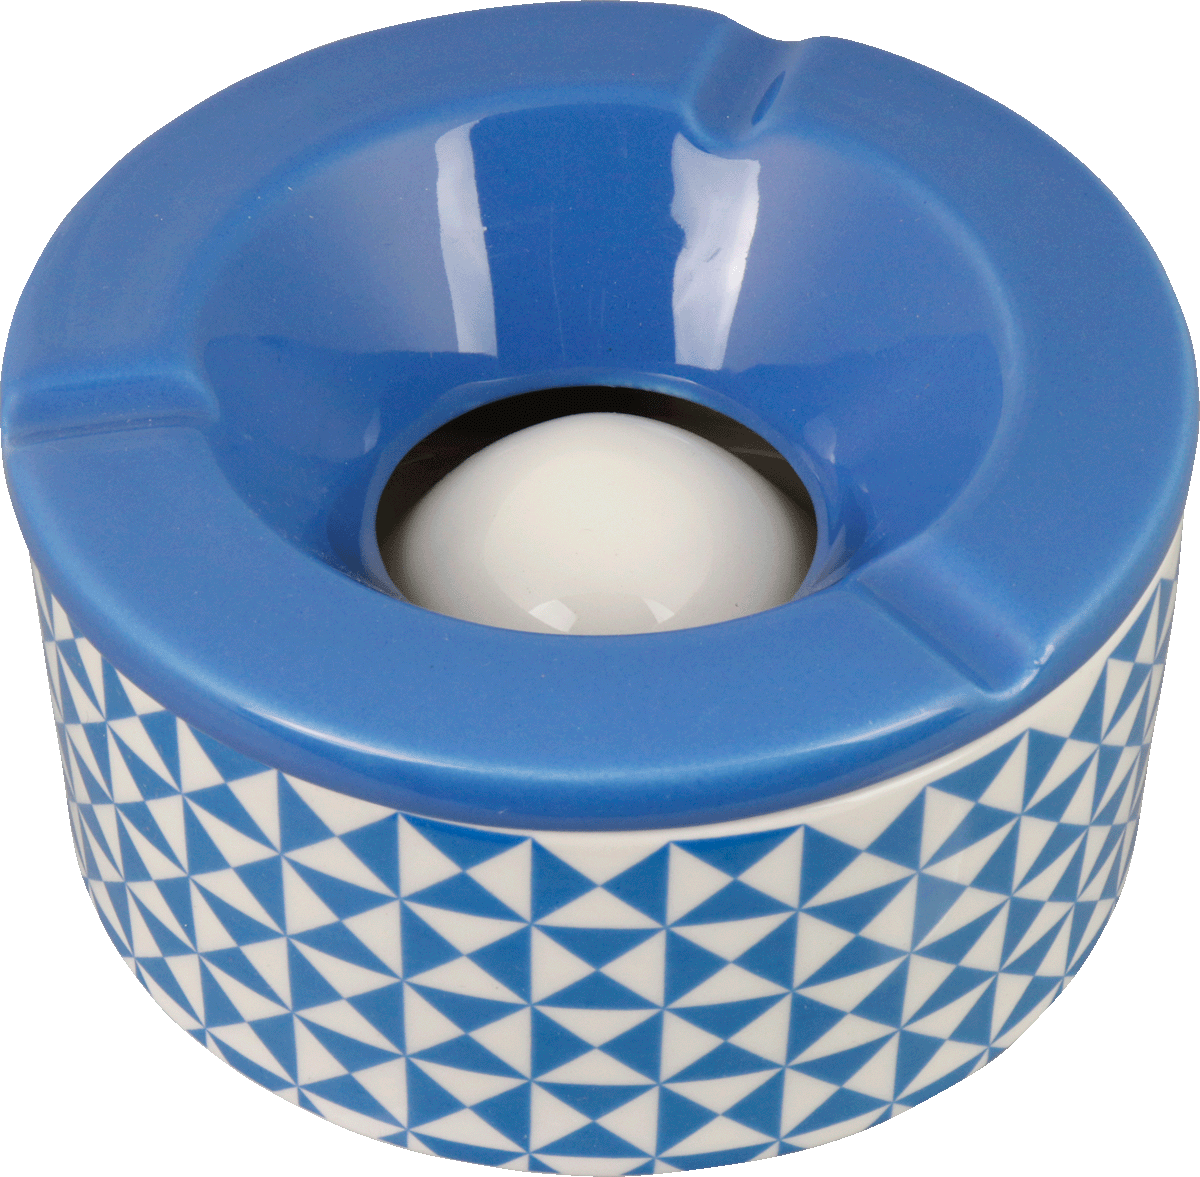 Windaschenbecher Keramik weiß/blau gemustert sortiert 12cm für 6,25 €